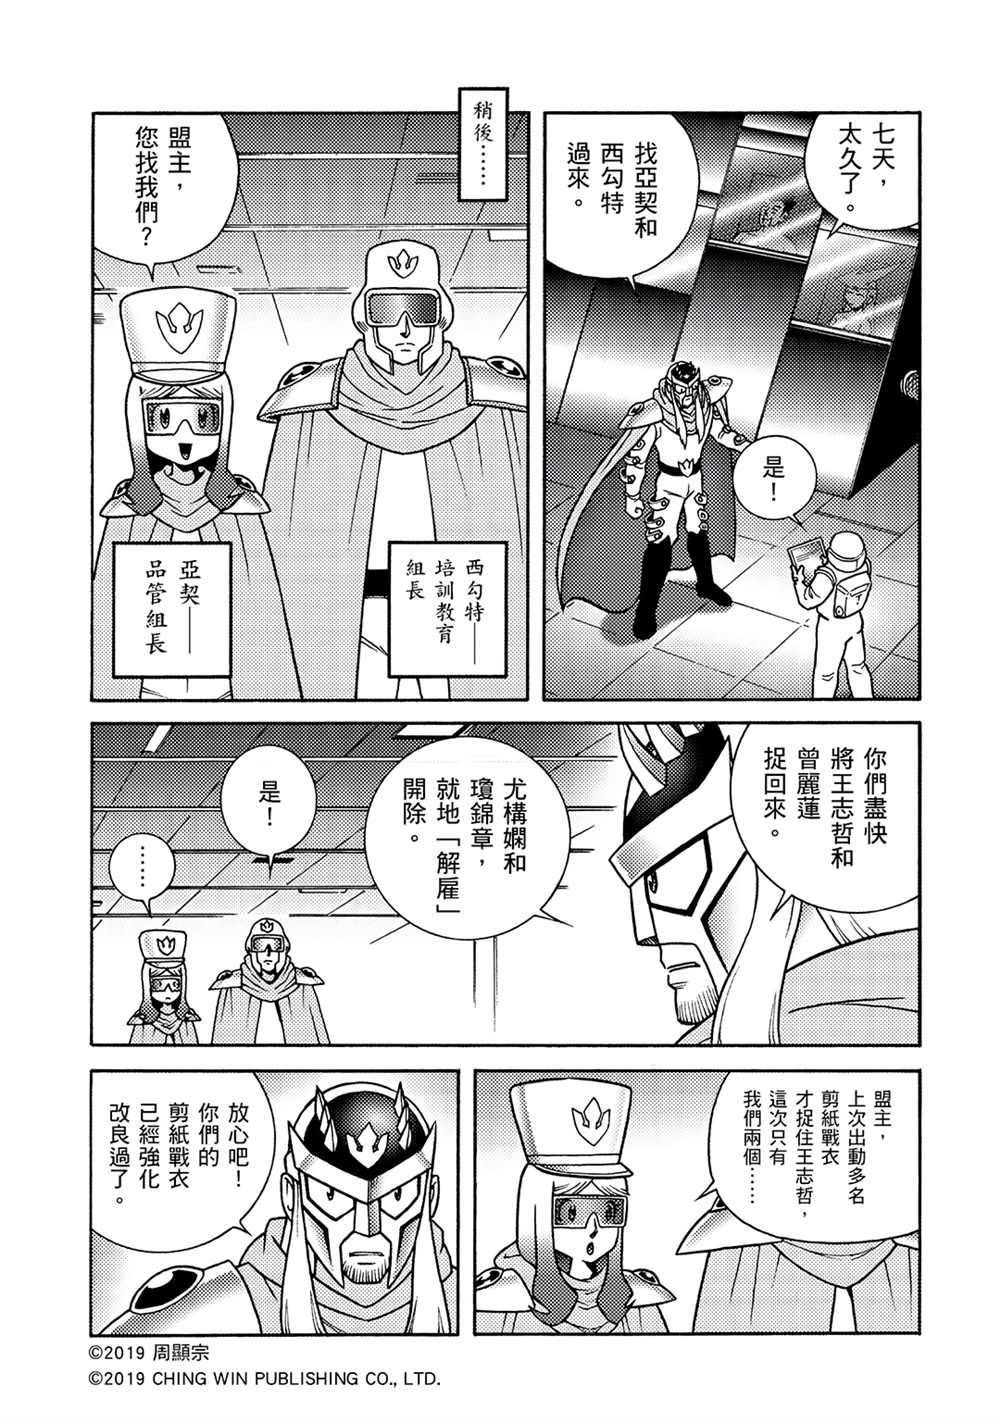 折纸战士A漫画,第4回红色天龙重生4图